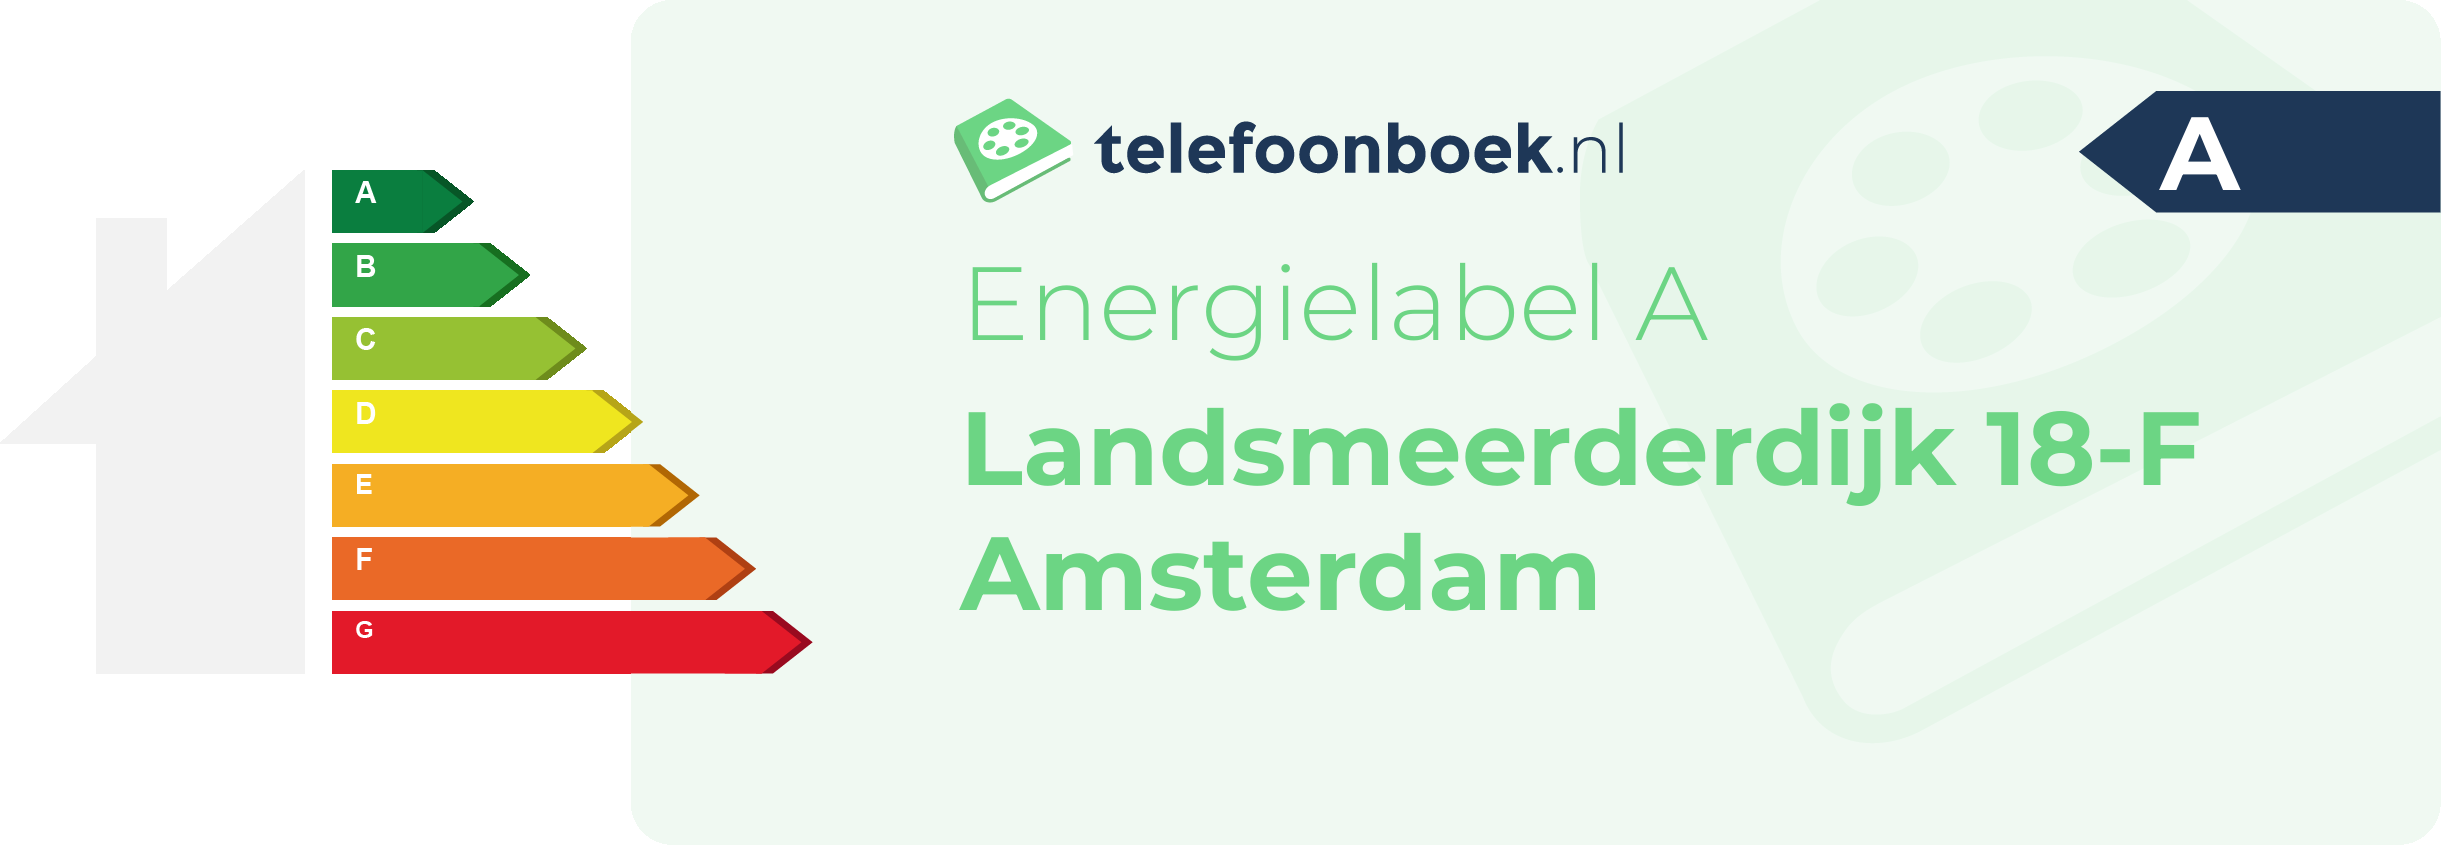 Energielabel Landsmeerderdijk 18-F Amsterdam